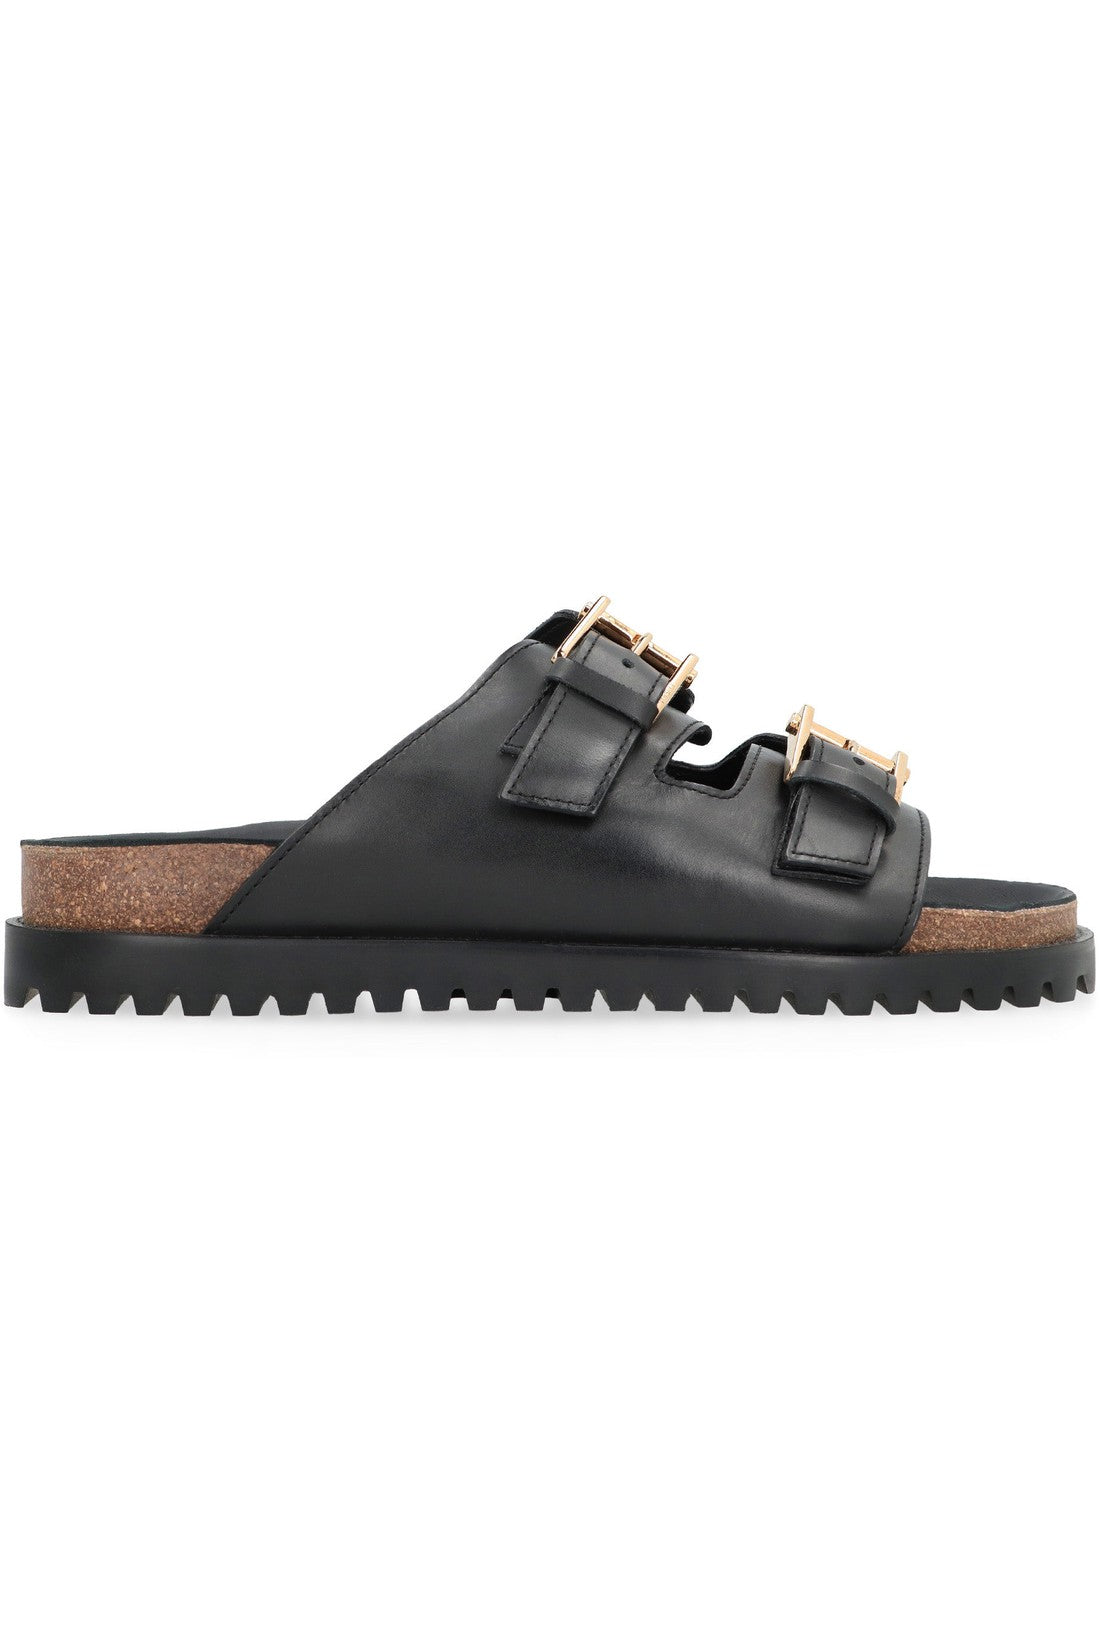 Versace-OUTLET-SALE-Leather sandals-ARCHIVIST